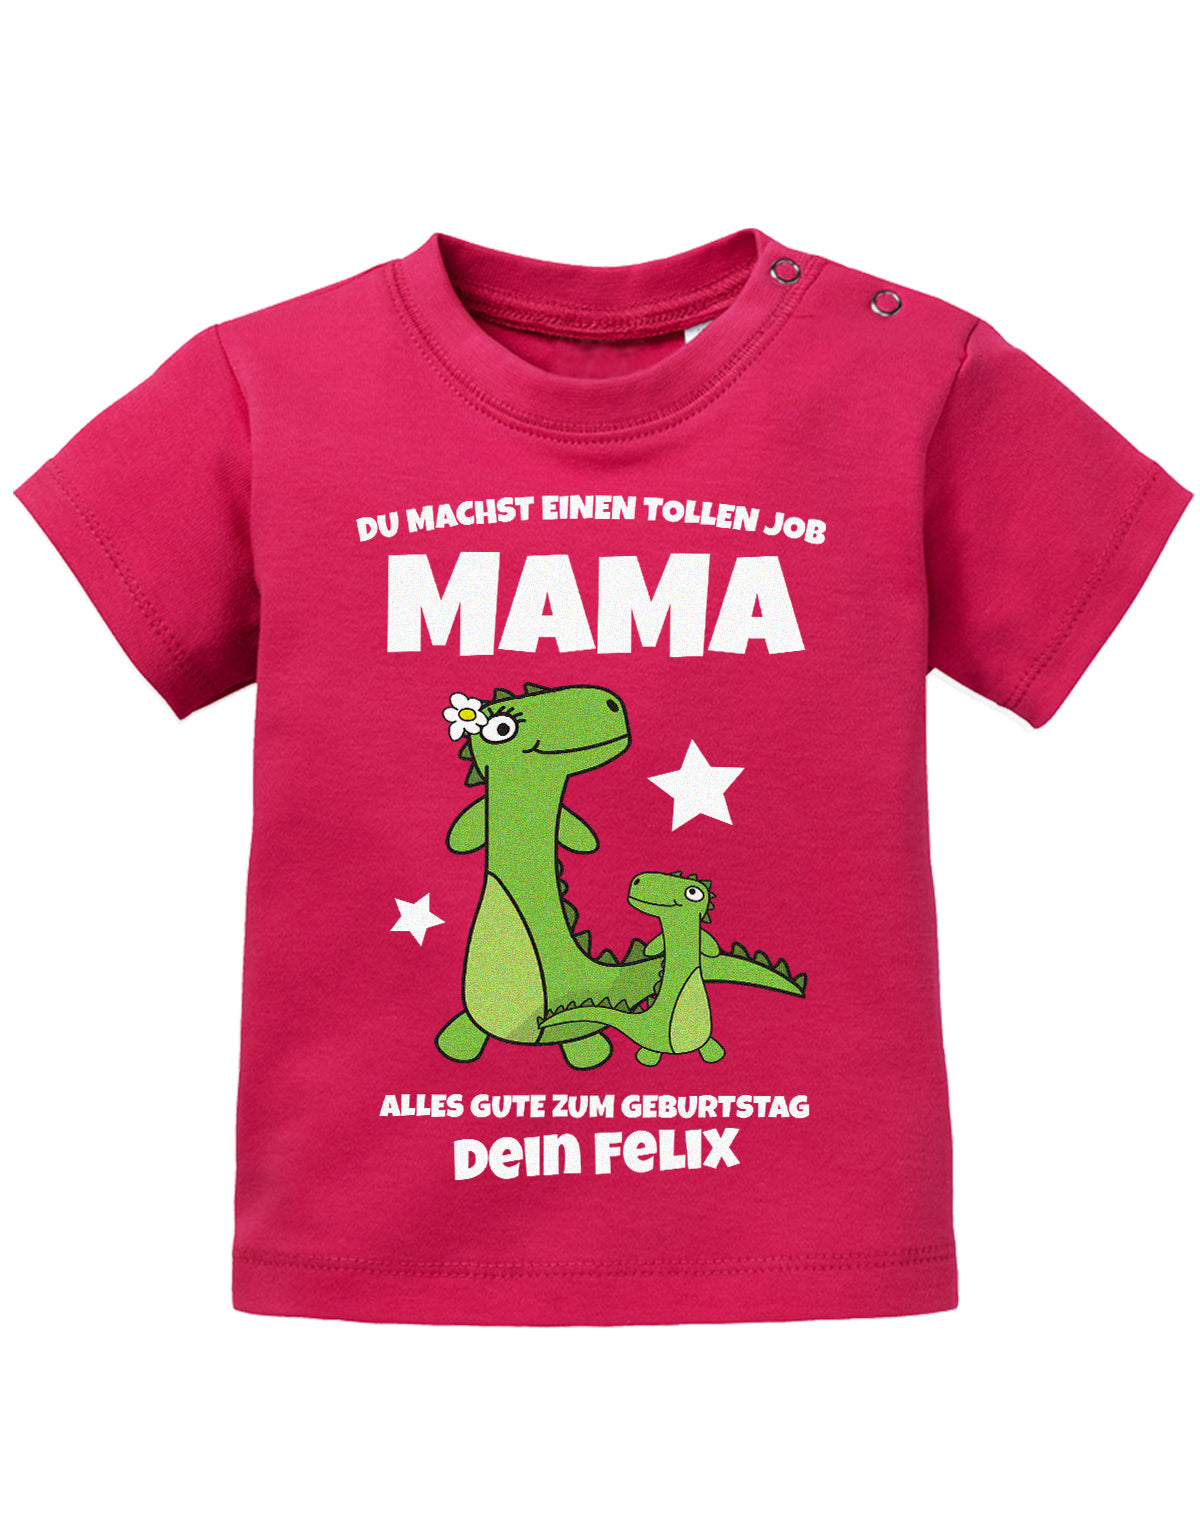 Mama Spruch Baby Shirt. Du machst einen tollen Job, Mama. Alles Gute zum Geburtstag. Personalisiert mit Namen. Sorbet